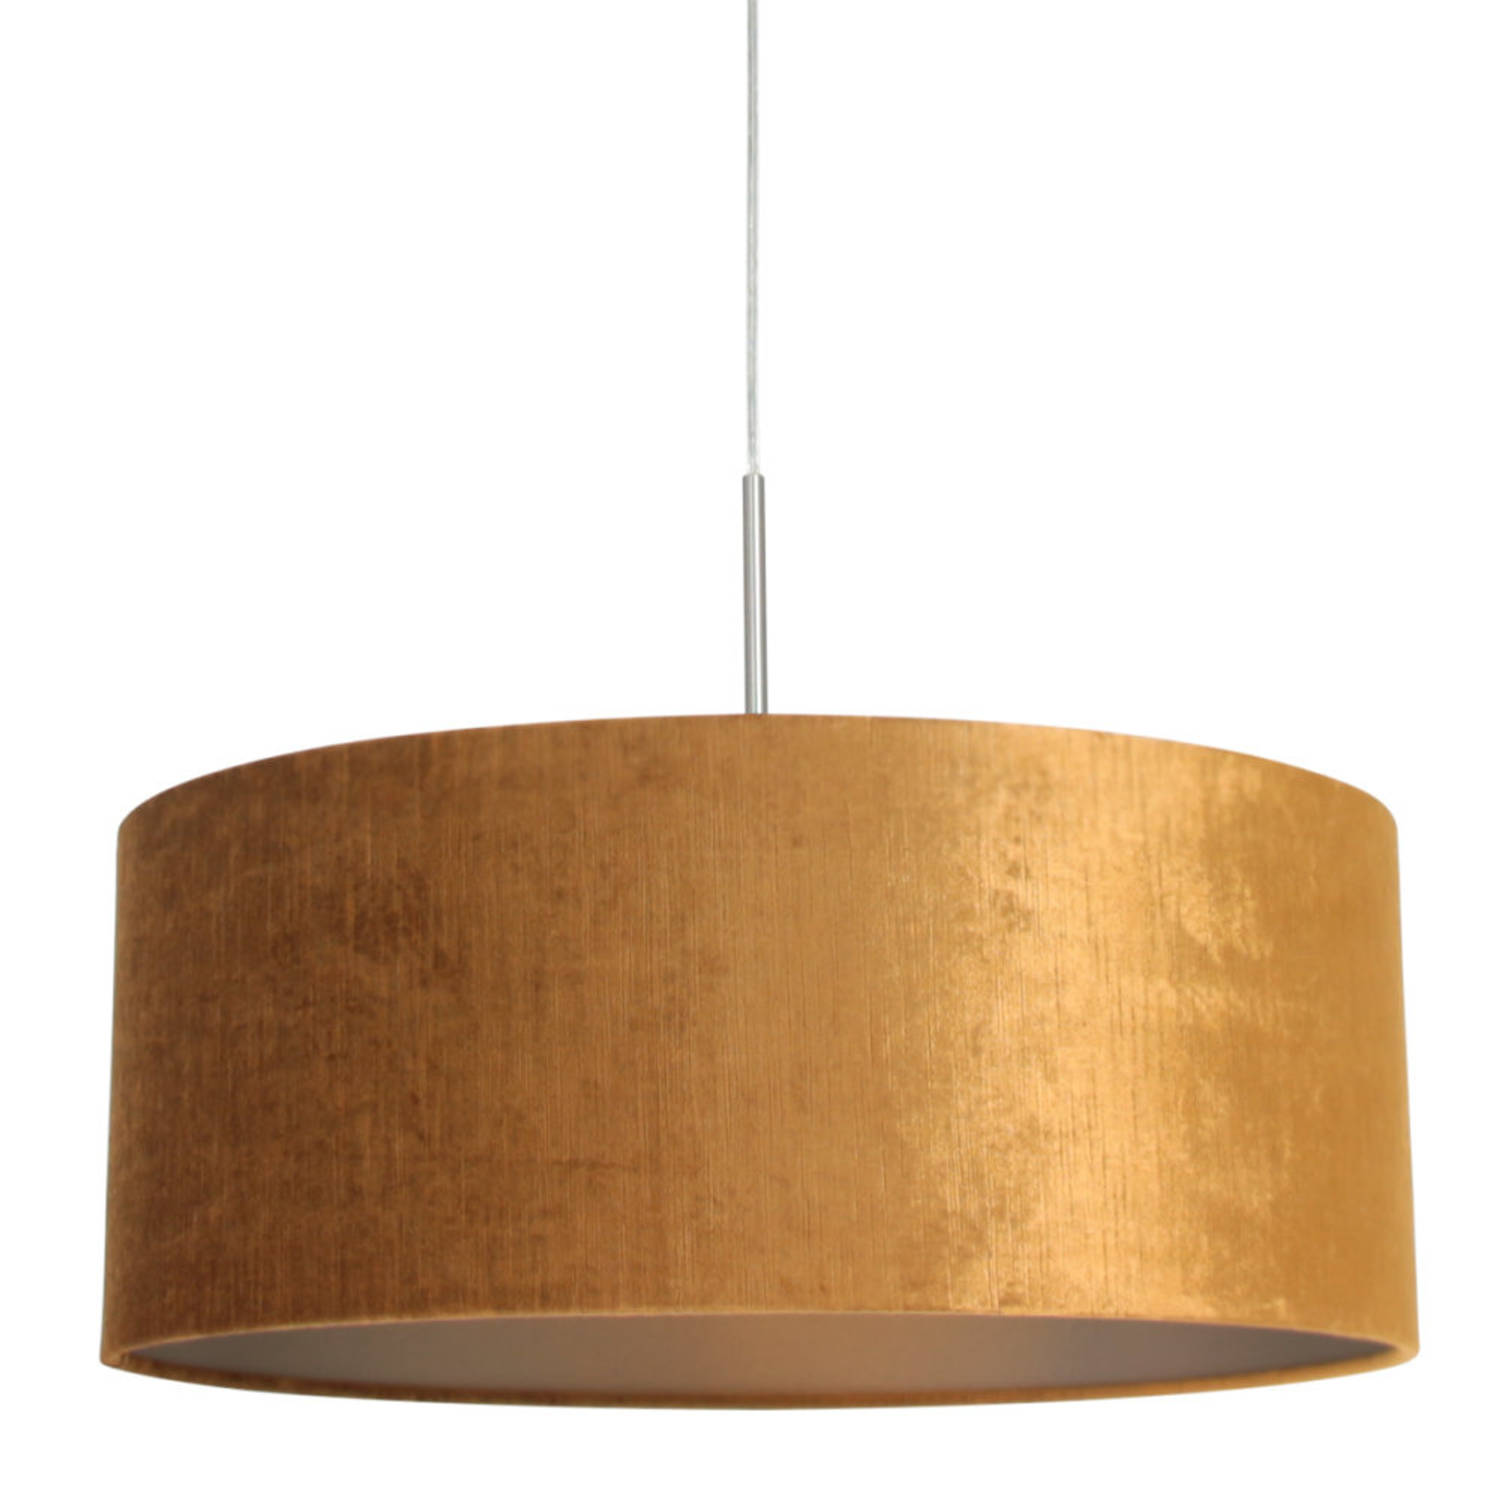 Steinhauer Sparkled Light hanglamp gouden velvet kap Ø50 cm